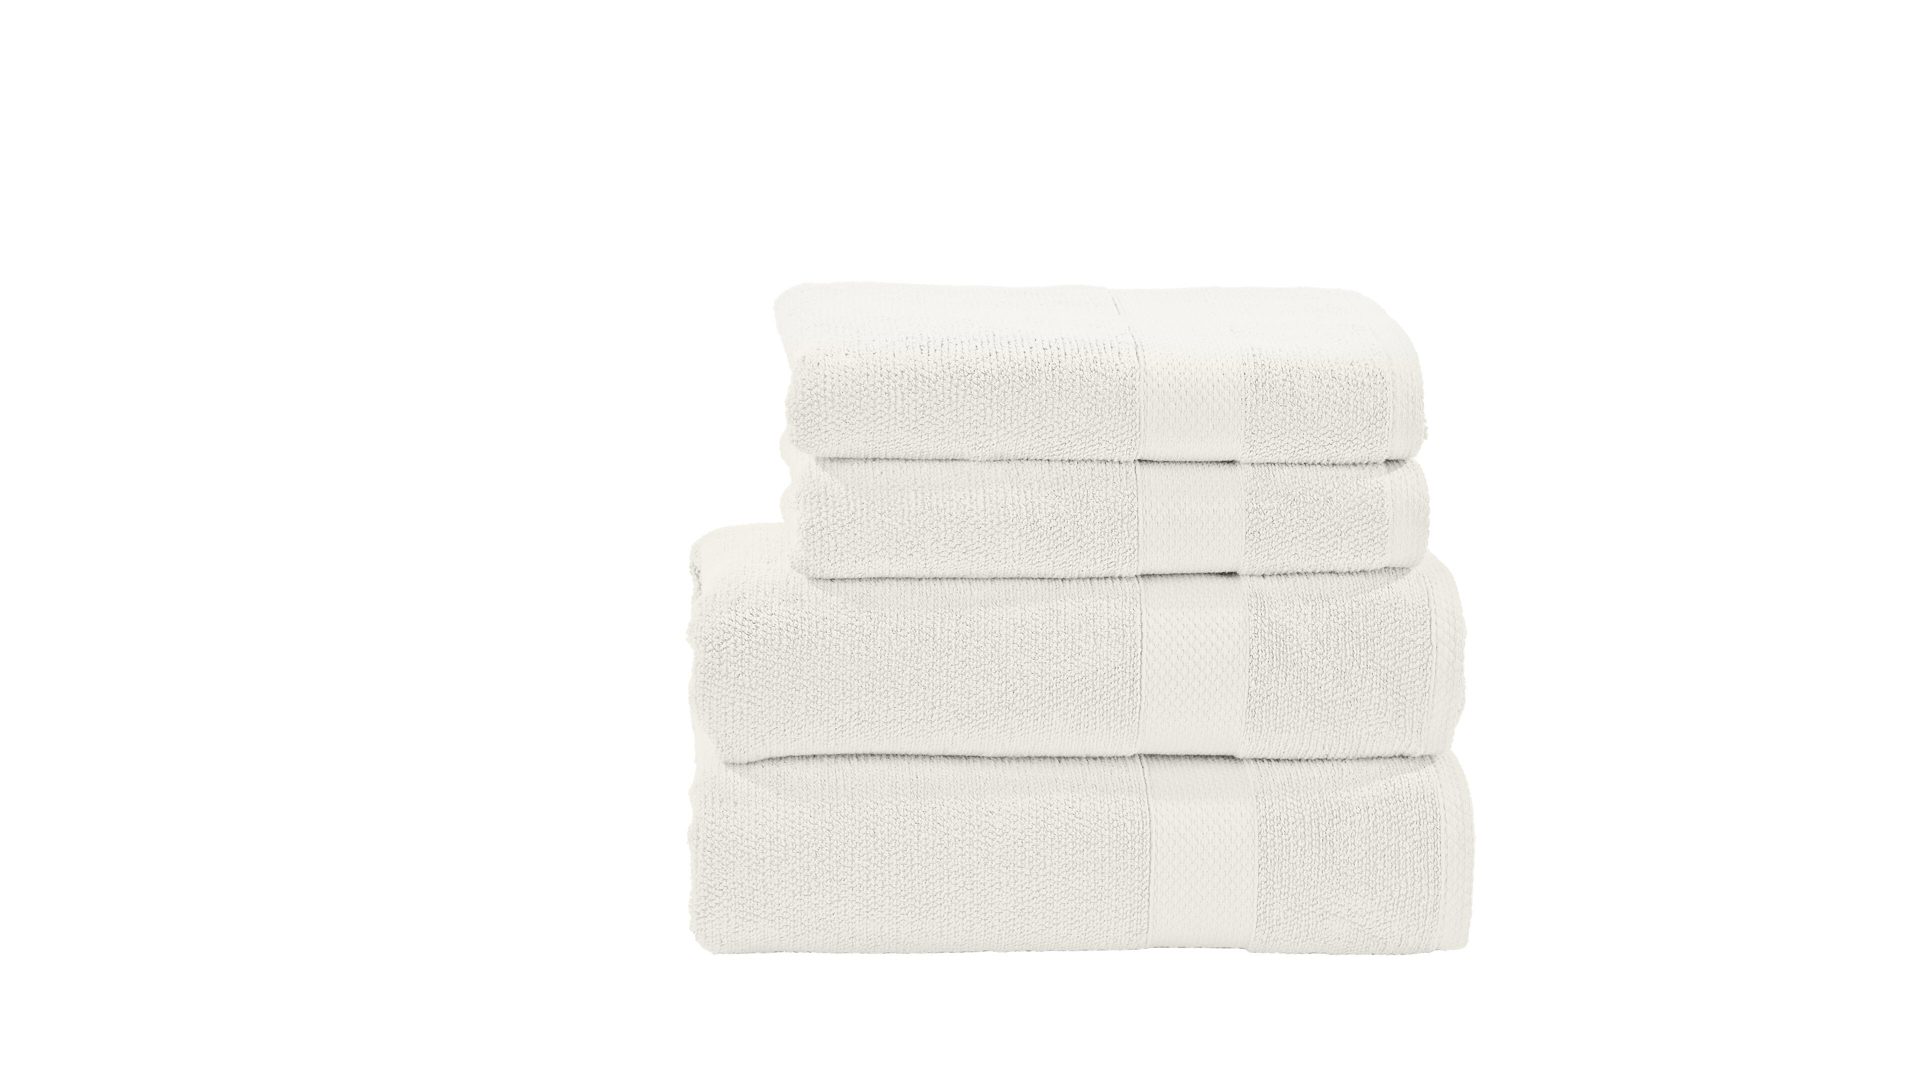 Handtuch-Set Done.® be different aus Stoff in Weiß DON.E® Handtuch-Set Deluxe weiße Baumwolle – vierteilig